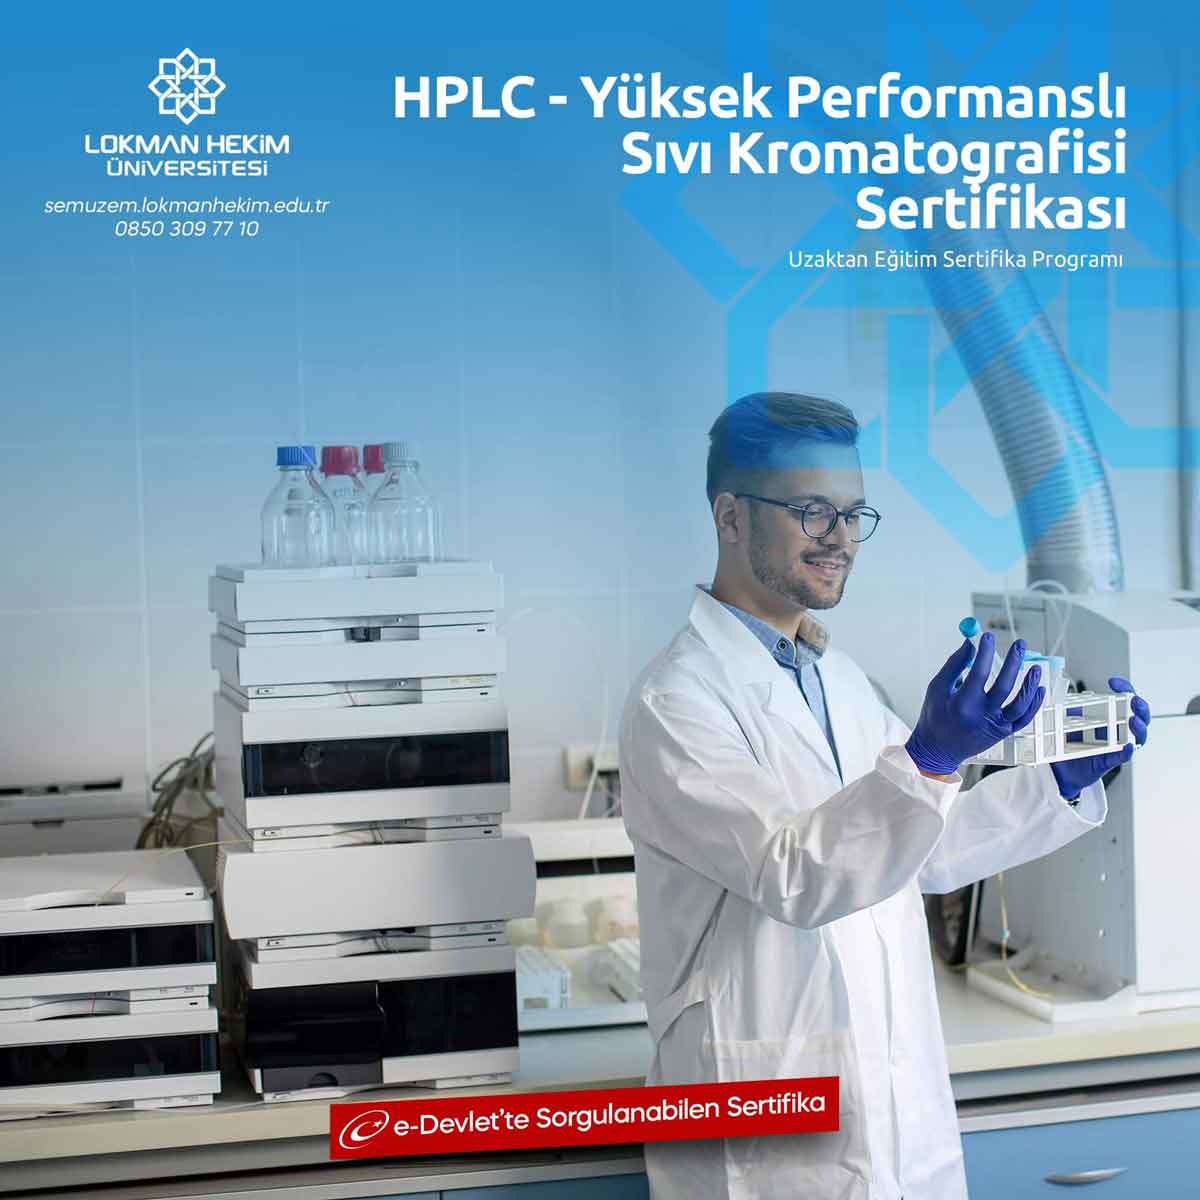 HPLC - Yüksek Performanslı Sıvı Kromatografisi Eğitimi Nedir